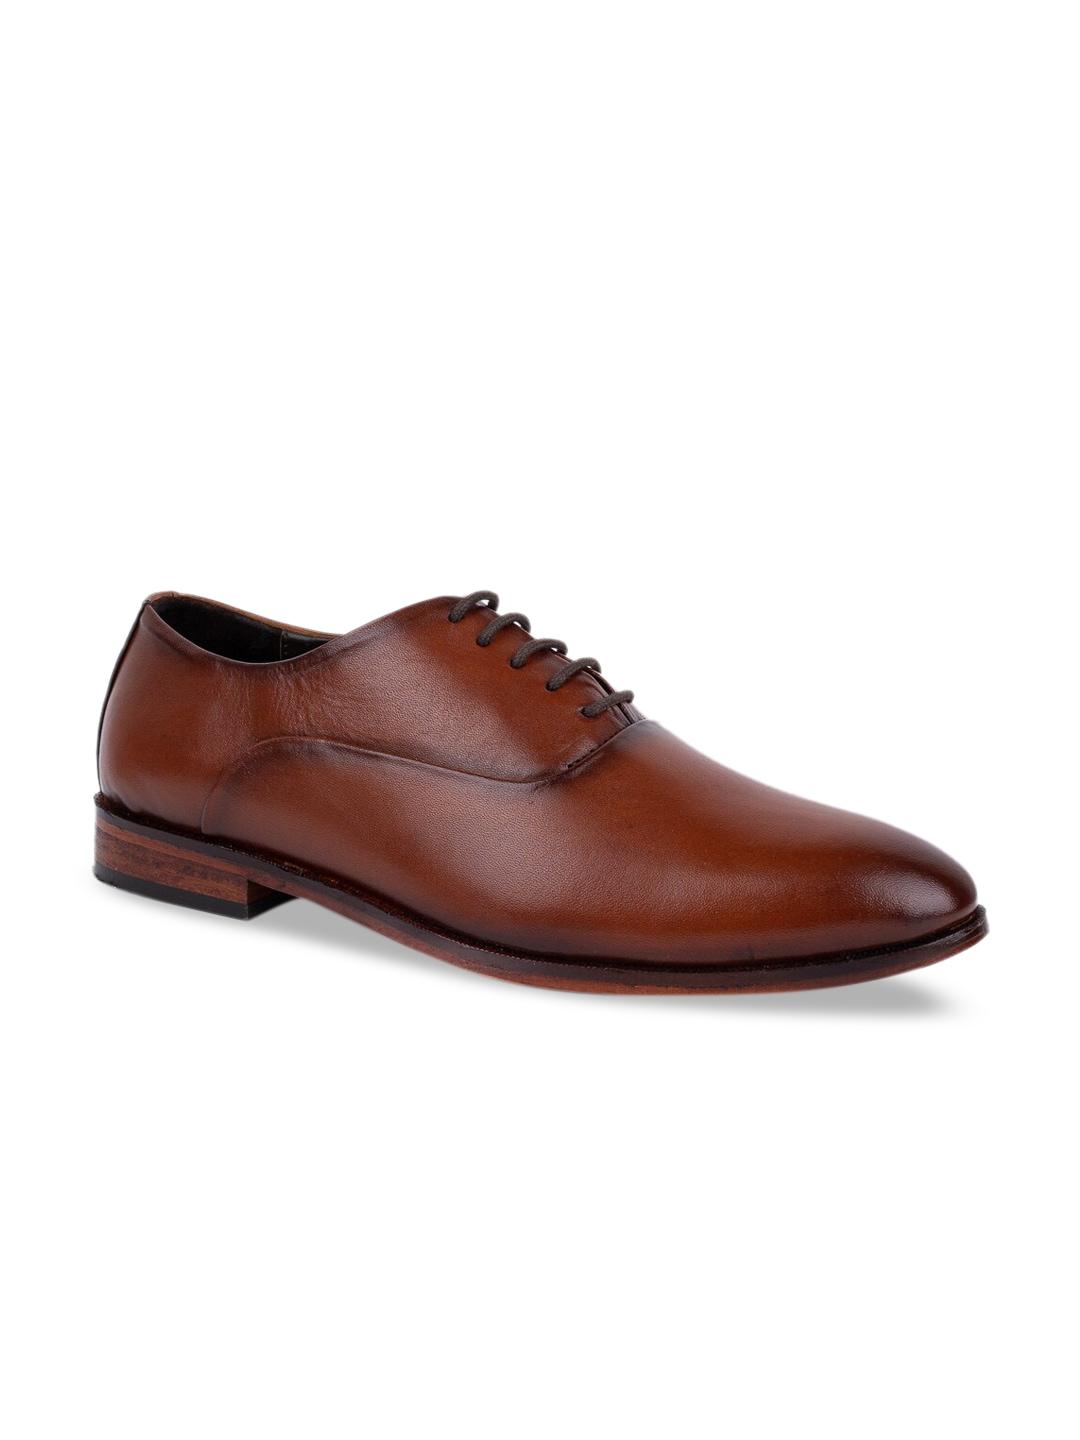 LA BOTTE Men Brown Solid Leather Formal Loafers